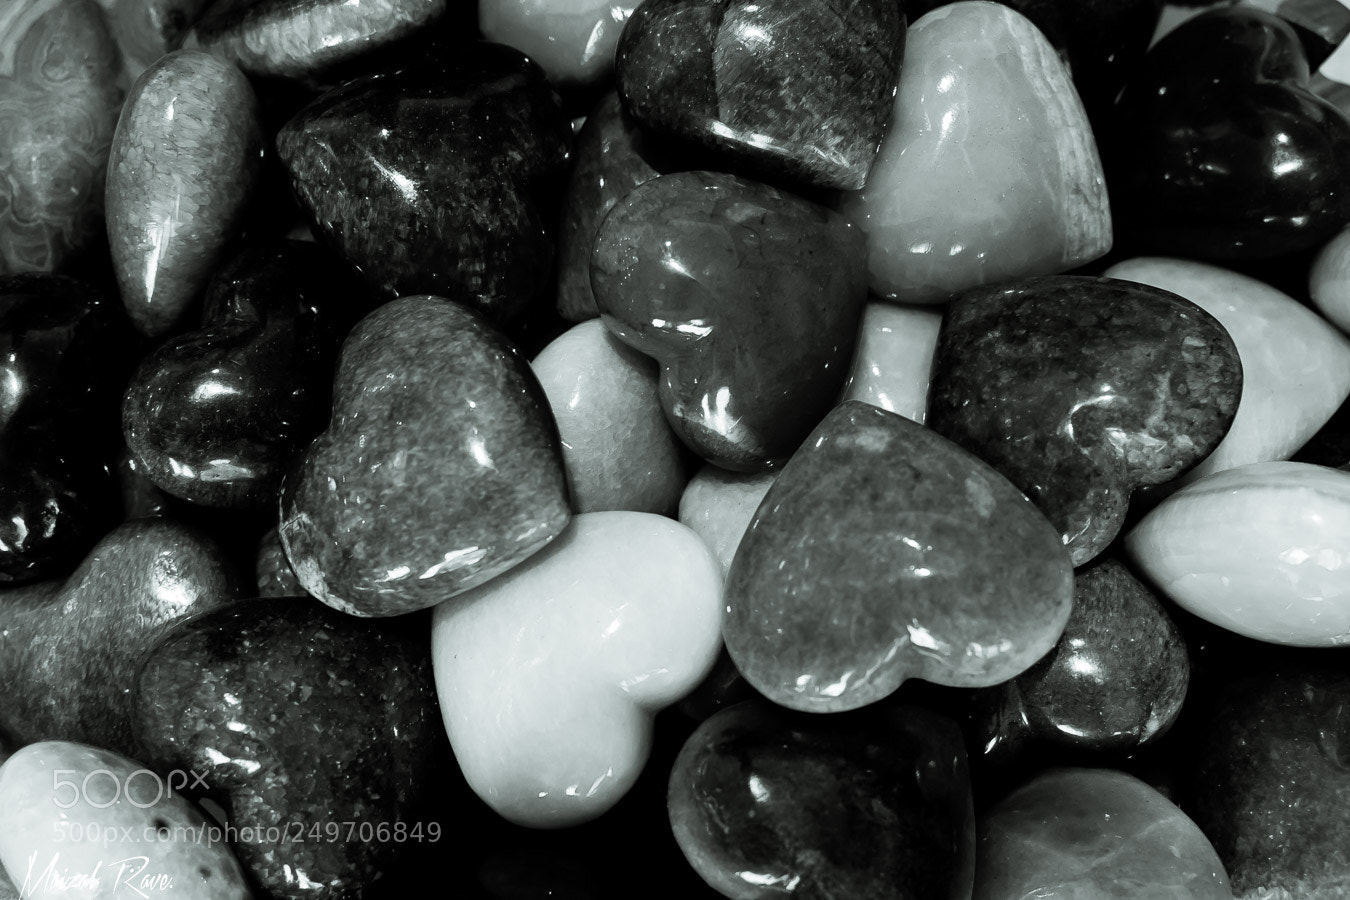 Nikon D3400 sample photo. Corazones de piedra. photography